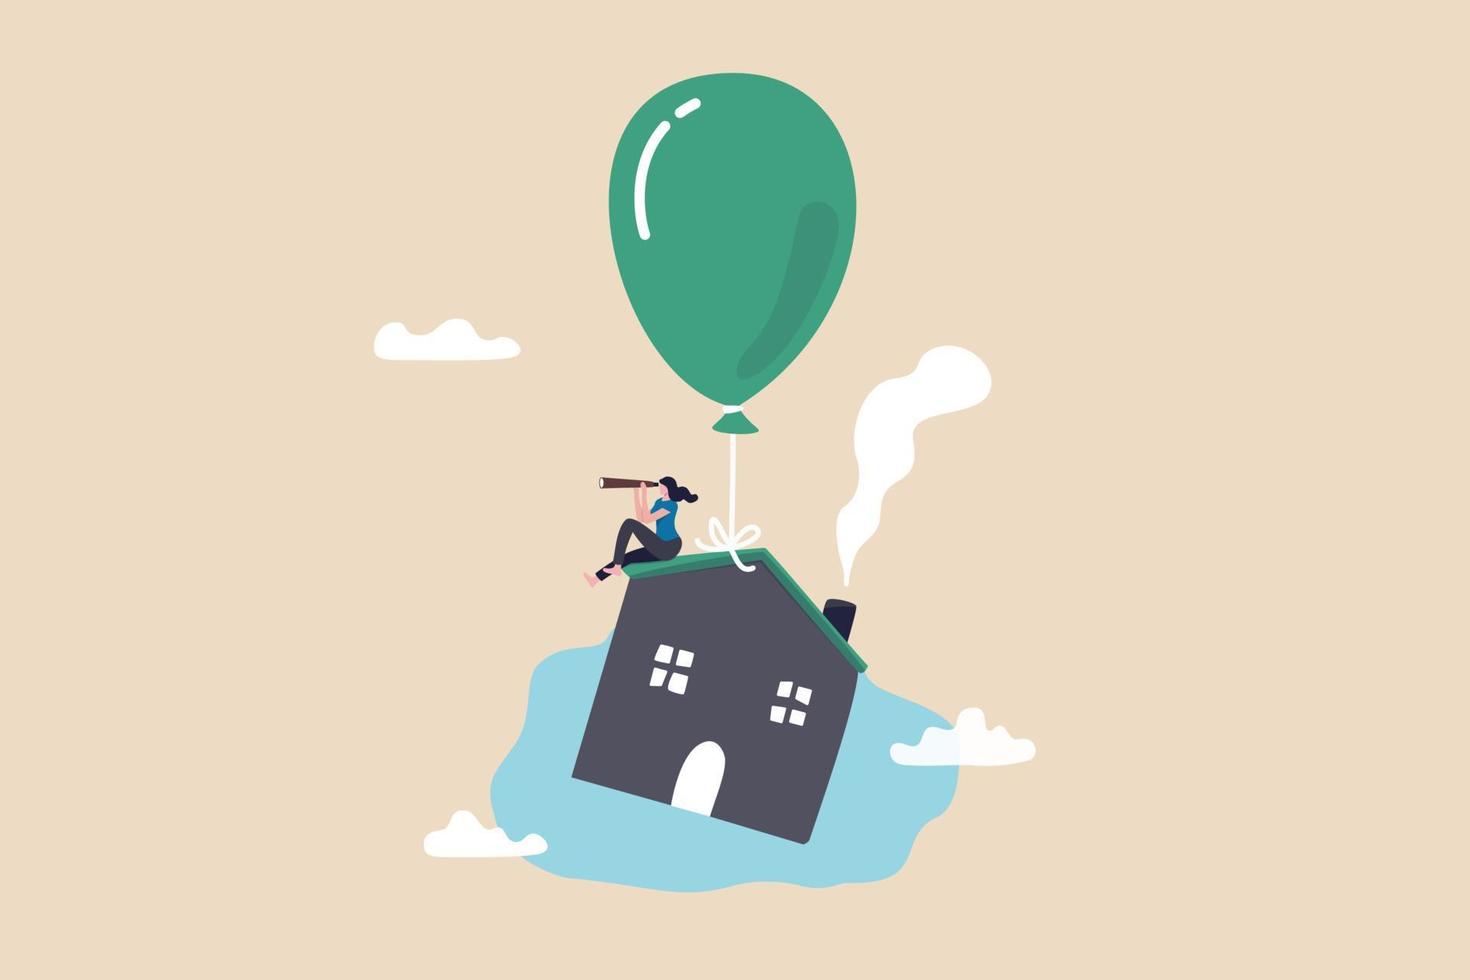 taux d'intérêt hypothécaire de la maison en hausse, impact du prêt immobilier de l'inflation, bulle des prix de l'immobilier ou concept d'opportunité d'investissement dans le logement, propriétaire de la maison avec télescope sur la maison volante avec ballon. vecteur